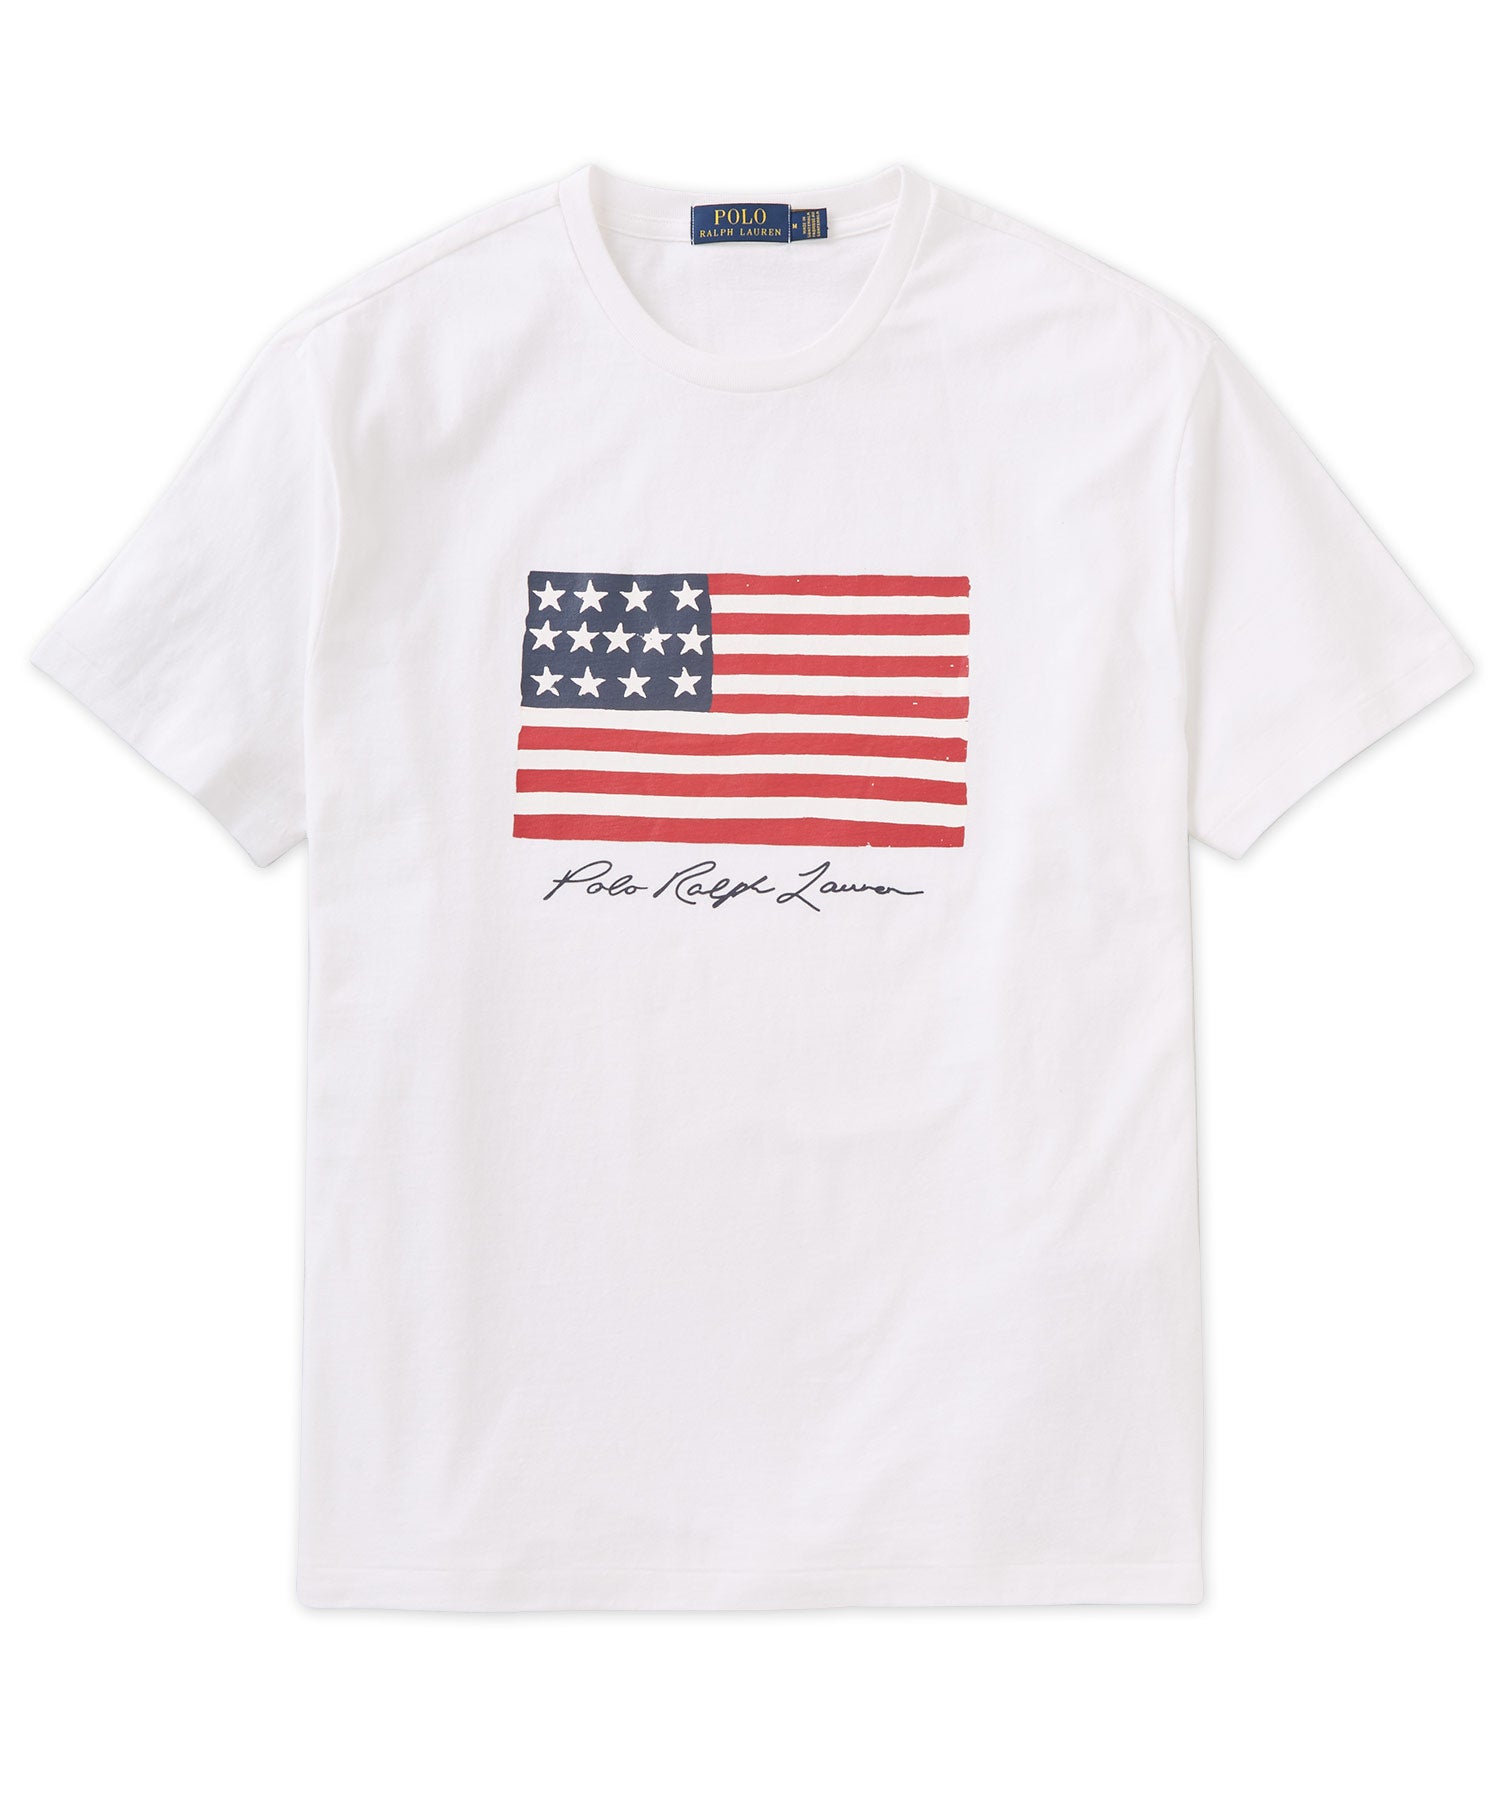 Polo Ralph Lauren Short Sleeve American Flag T-Shirt, Men's Big & Tall